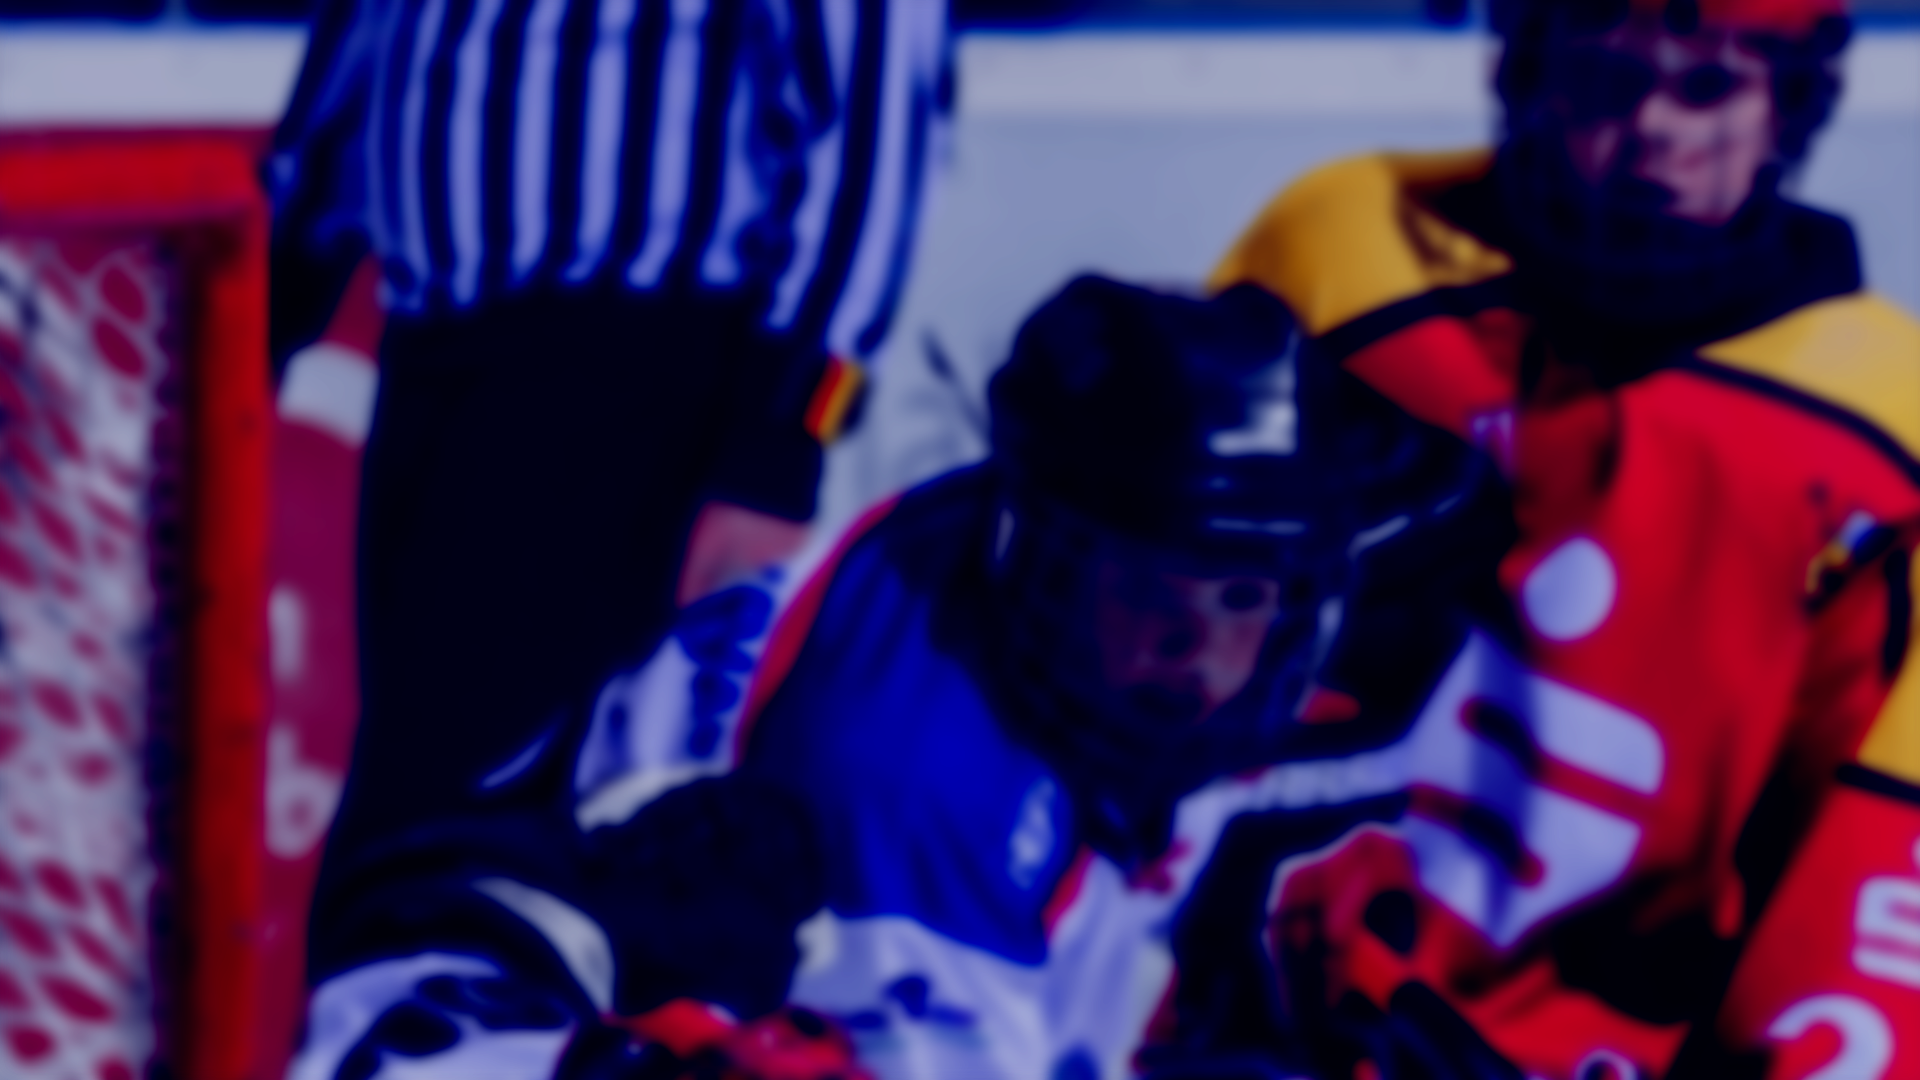 Hintergrundbild - schemenhafte Darstellung von Eishockeyspielern